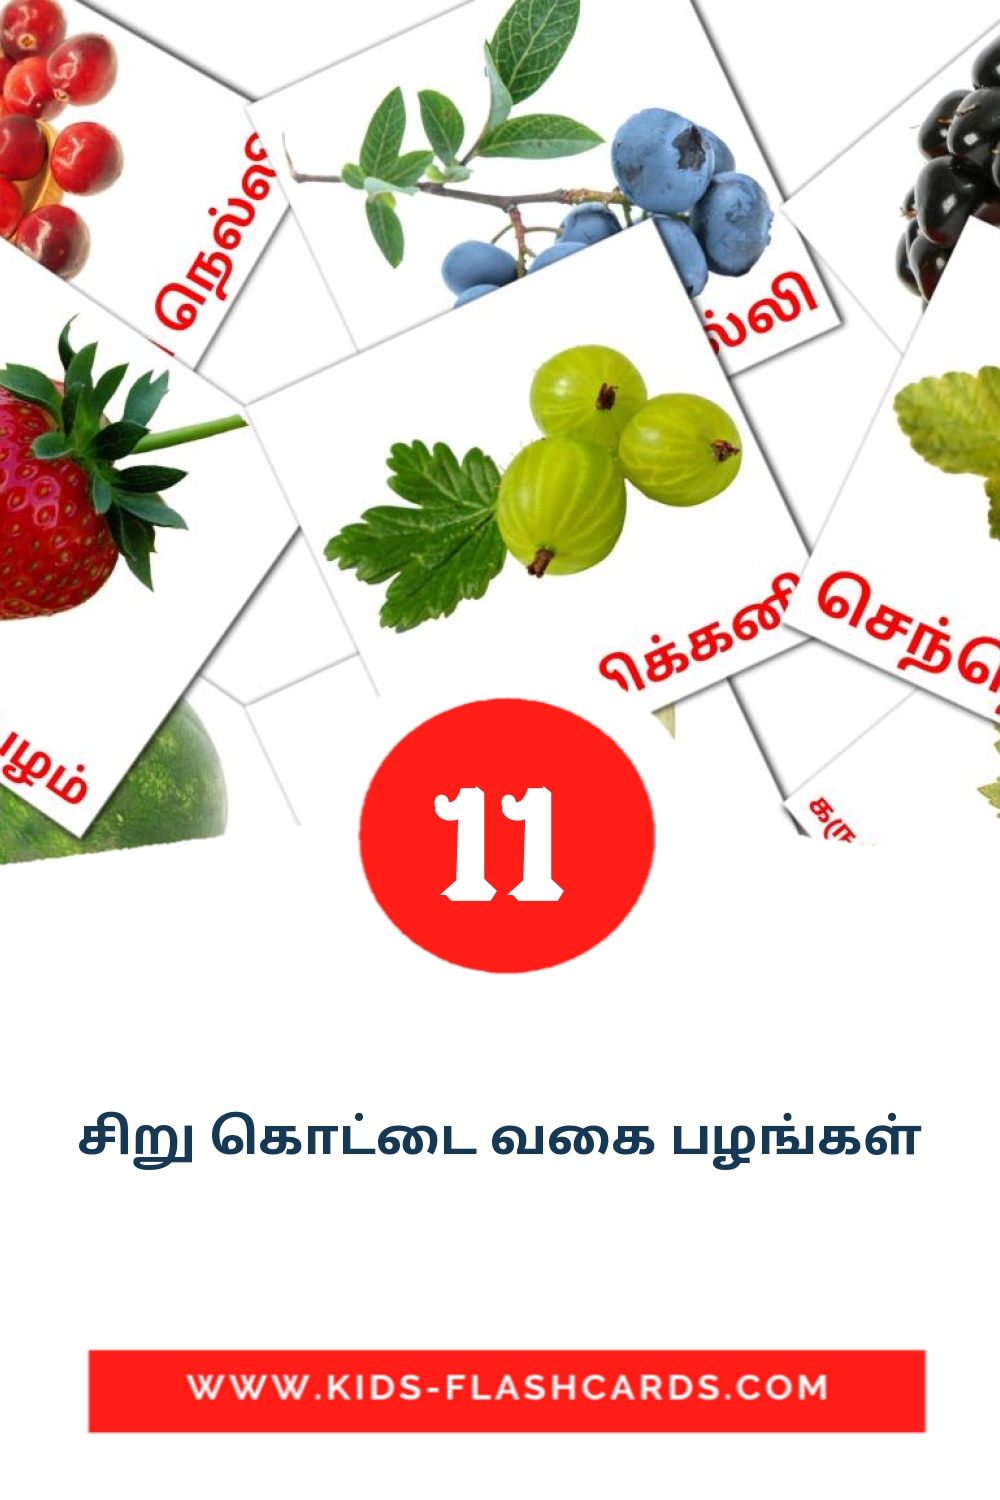 11 tarjetas didacticas de சிறு கொட்டை வகை பழங்கள் para el jardín de infancia en tamil